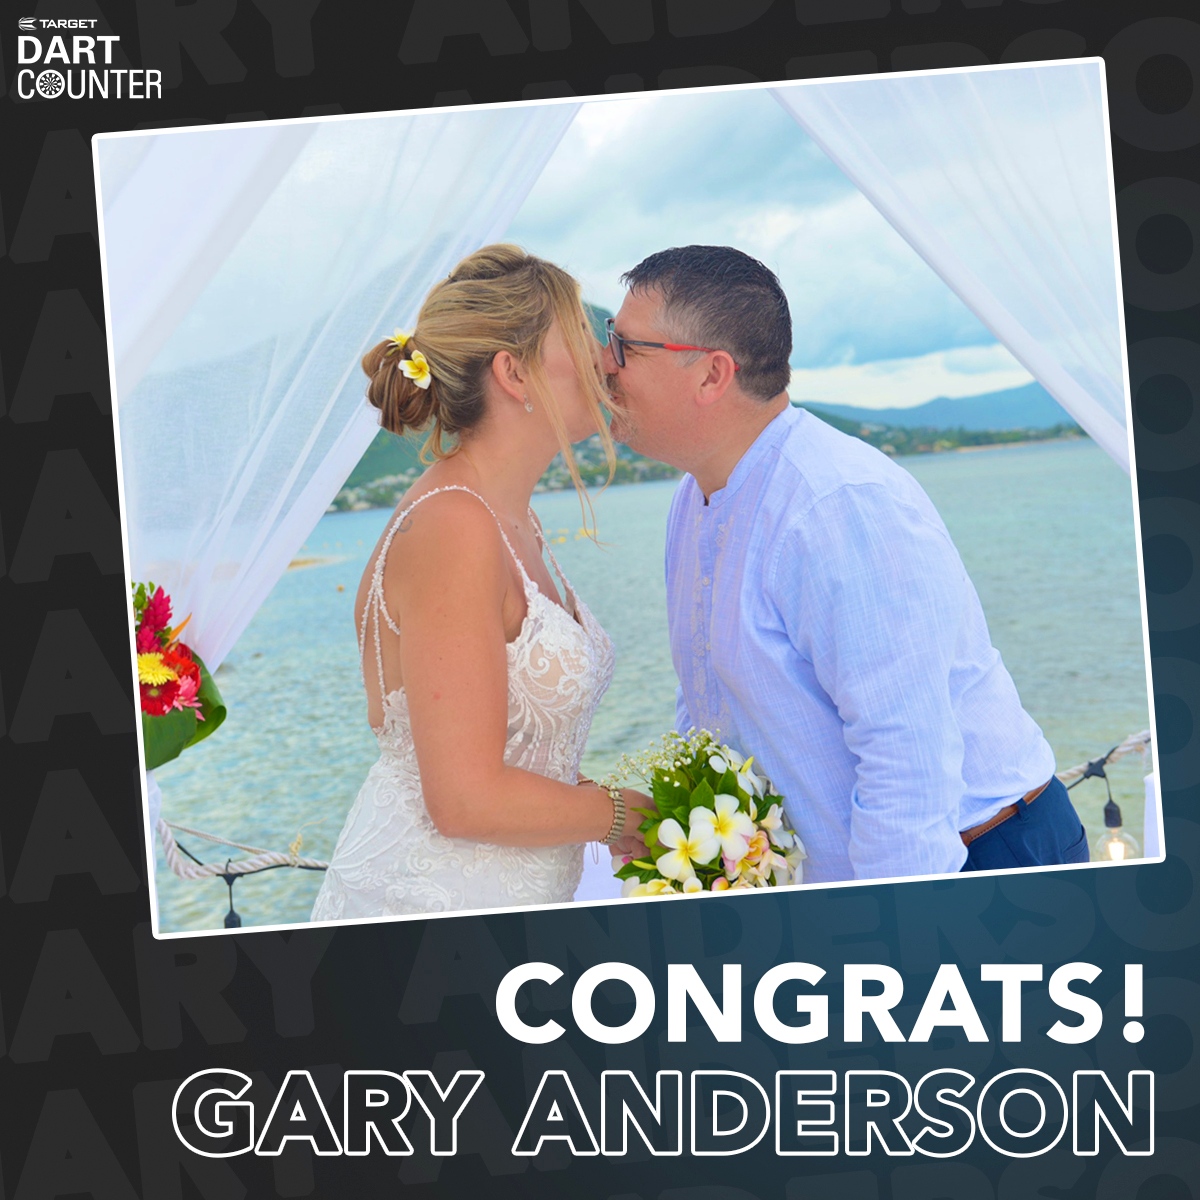 CONGRATS to Gary Anderson! ❤️👰🏼🤵🏻

#Darts #LoveTheDarts #DartCounter #DartCounterApp #TargetDarts #GaryAnderson